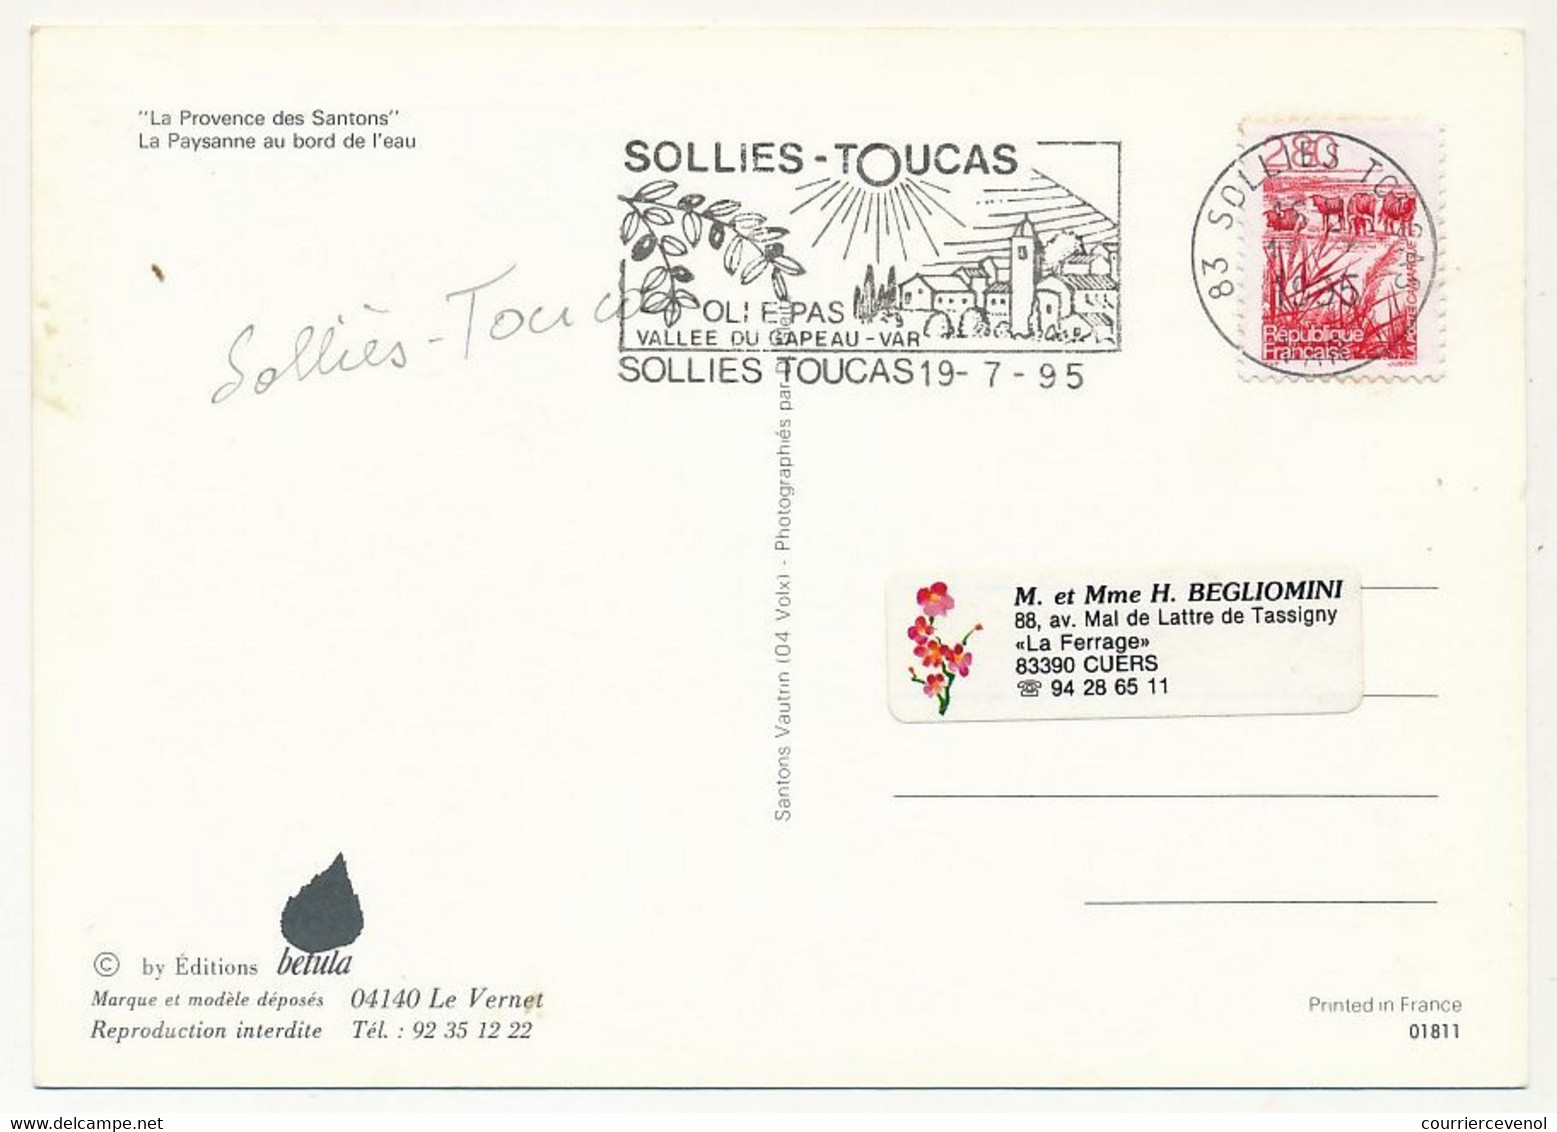 10 Cartes Modernes "La Provence des Santons" - Poissonnière, Bergère, Fromagère... etc - OMECs et Obl. concordantes 1995